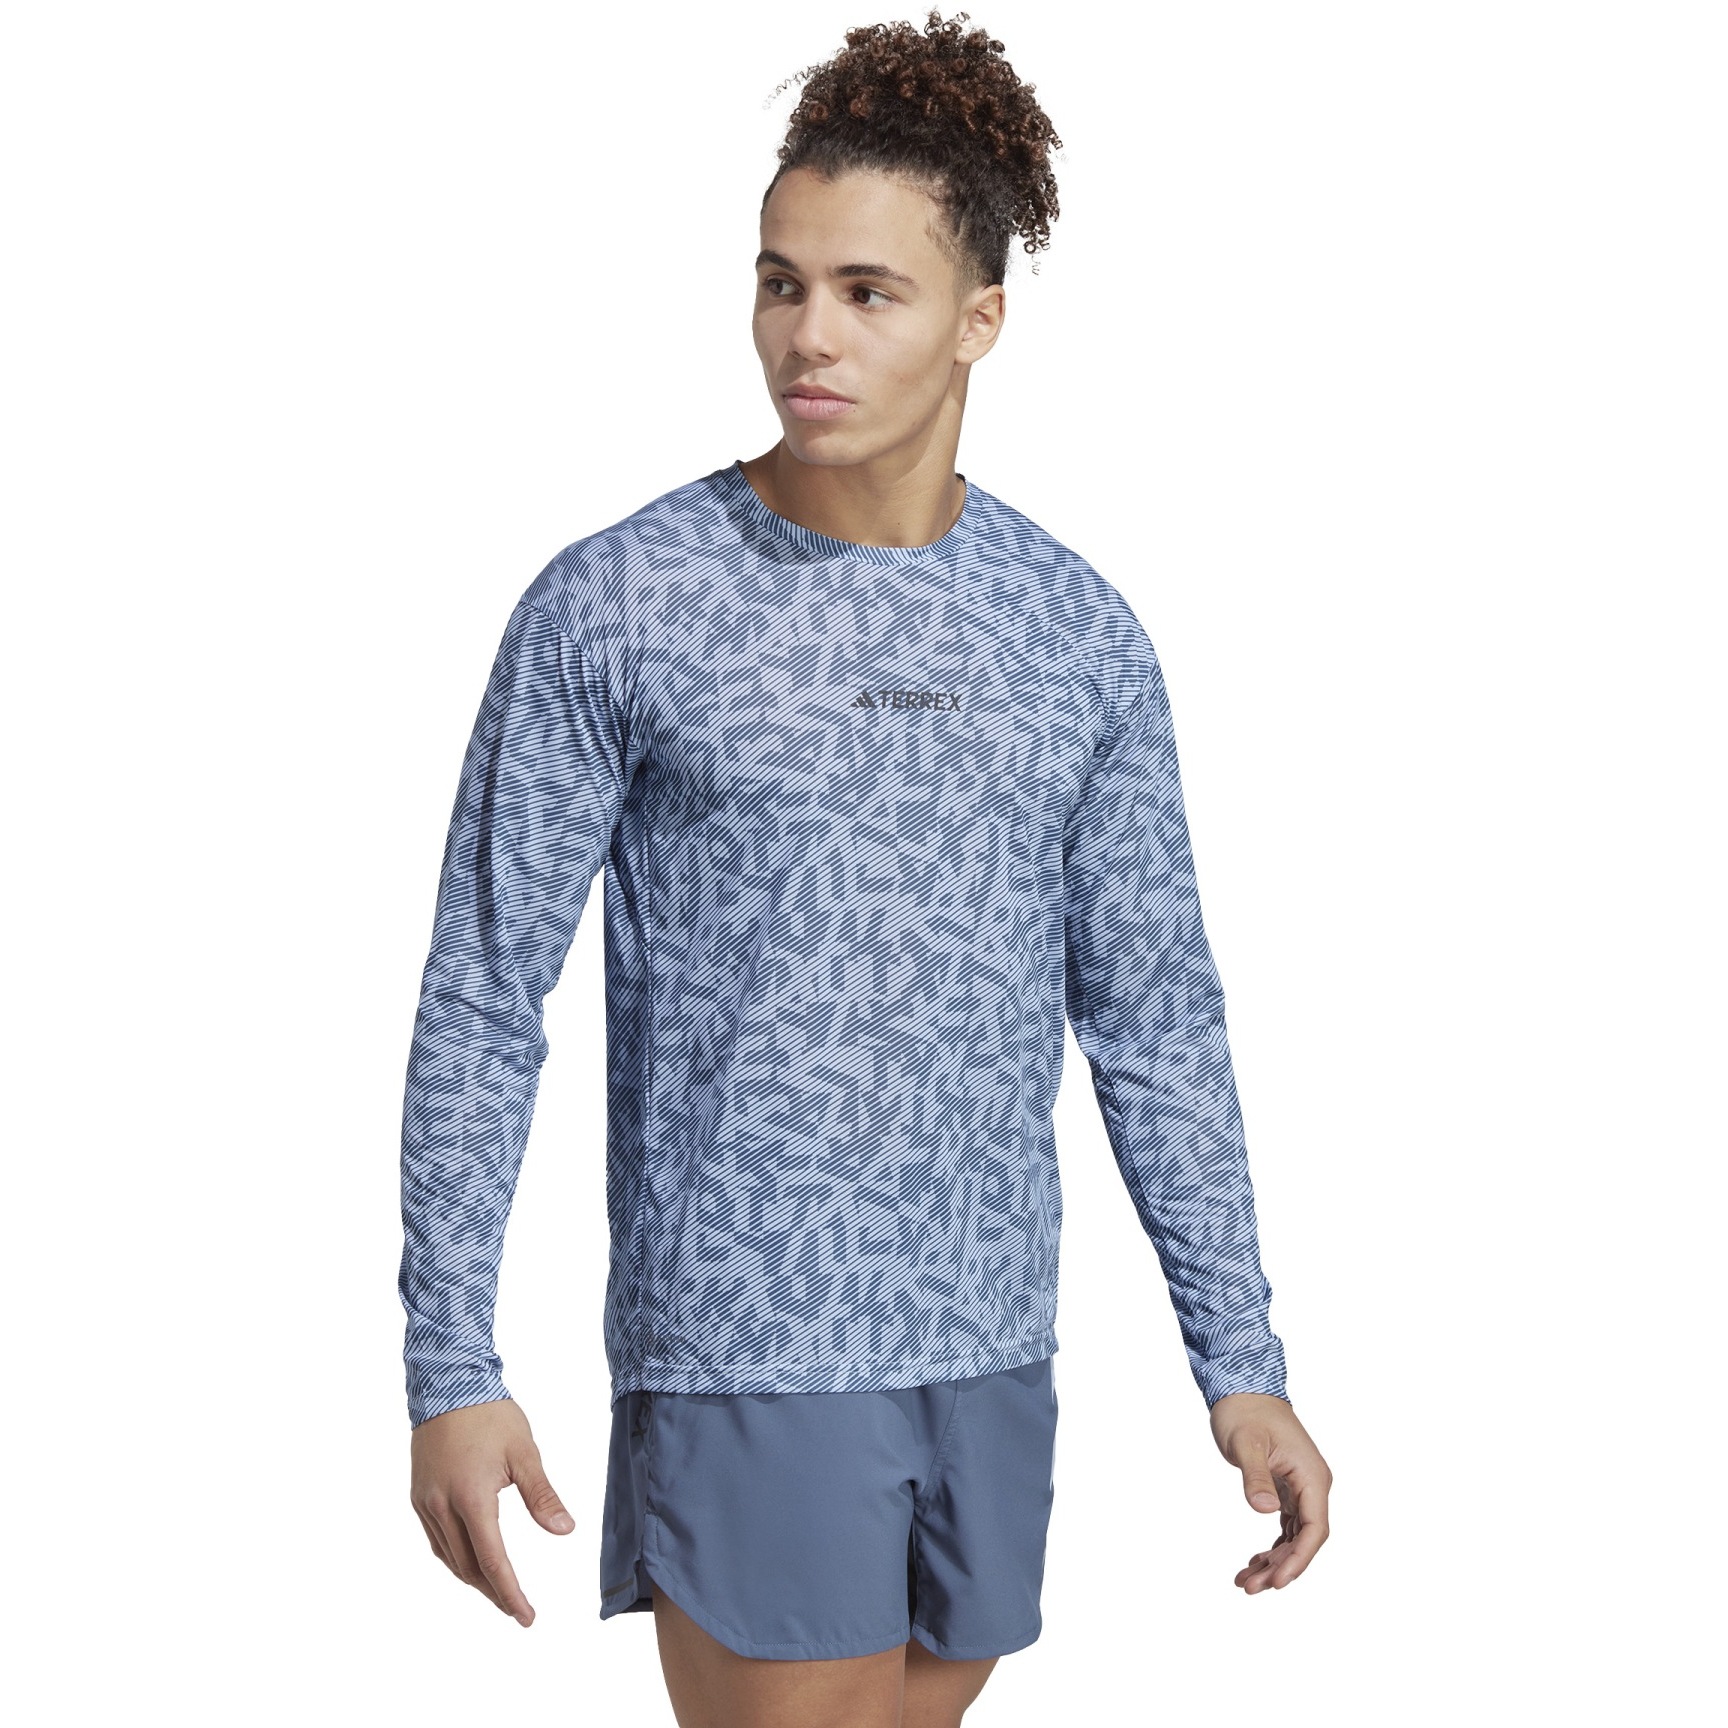 Produktbild von adidas Männer Trail GFX Langarmshirt - blue dawn/wonder steel HZ1323